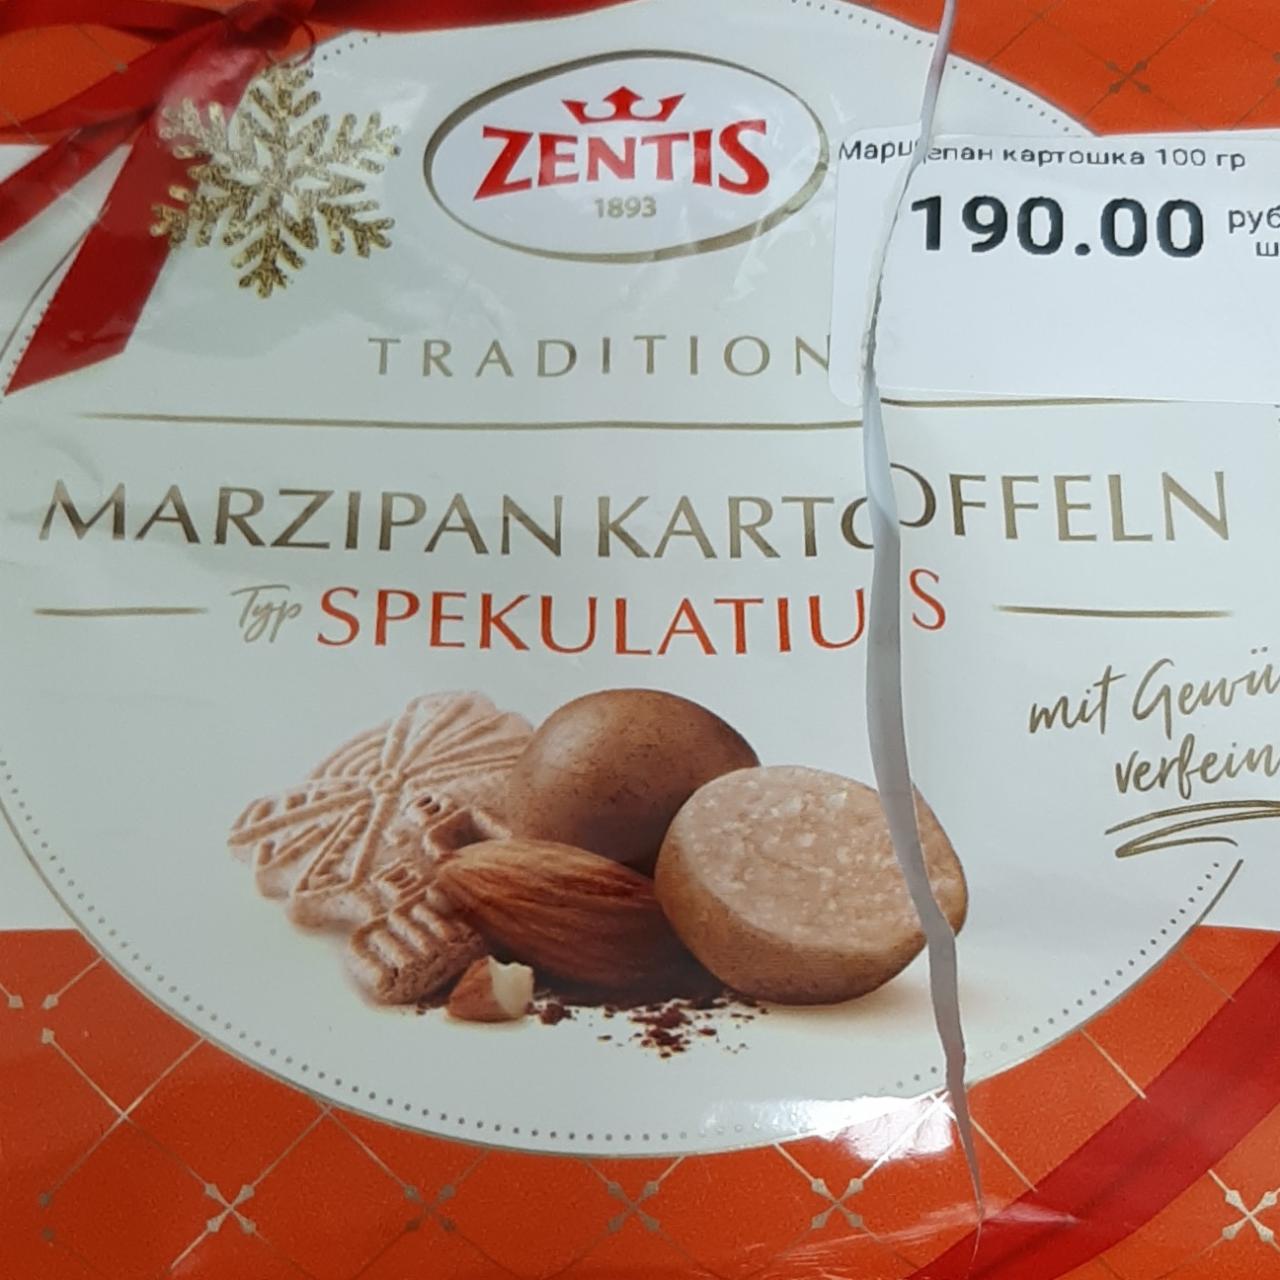 Фото - конфеты марципан картошка неглазированные Zentis